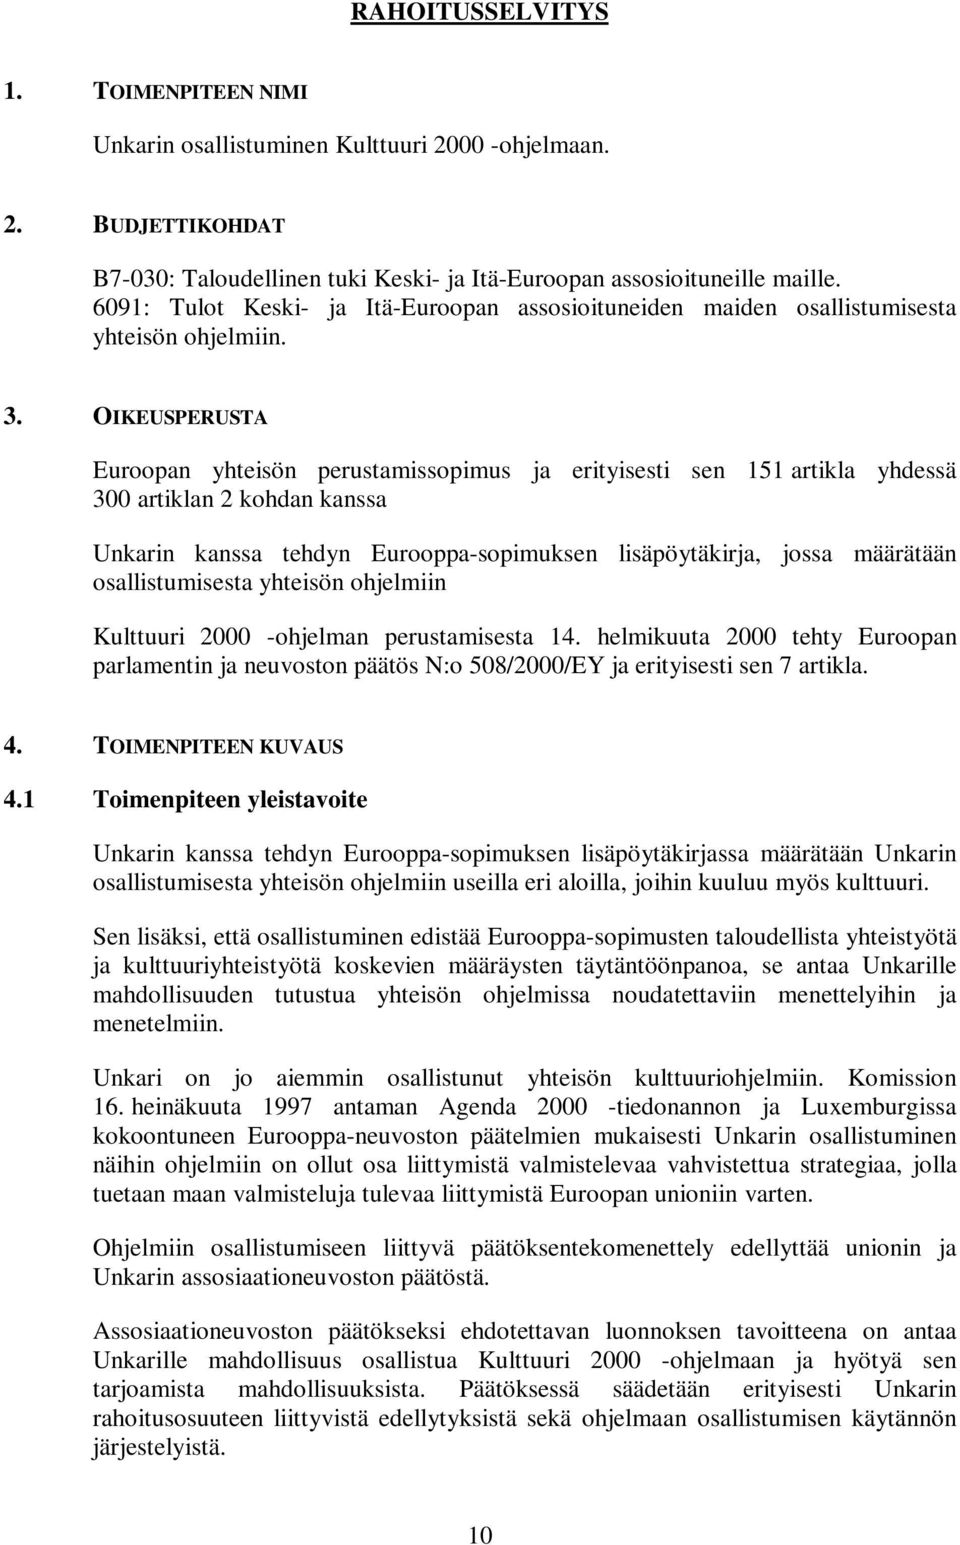 OIKEUSPERUSTA Euroopan yhteisön perustamissopimus ja erityisesti sen 151 artikla yhdessä 300 artiklan 2 kohdan kanssa Unkarin kanssa tehdyn Eurooppa-sopimuksen lisäpöytäkirja, jossa määrätään